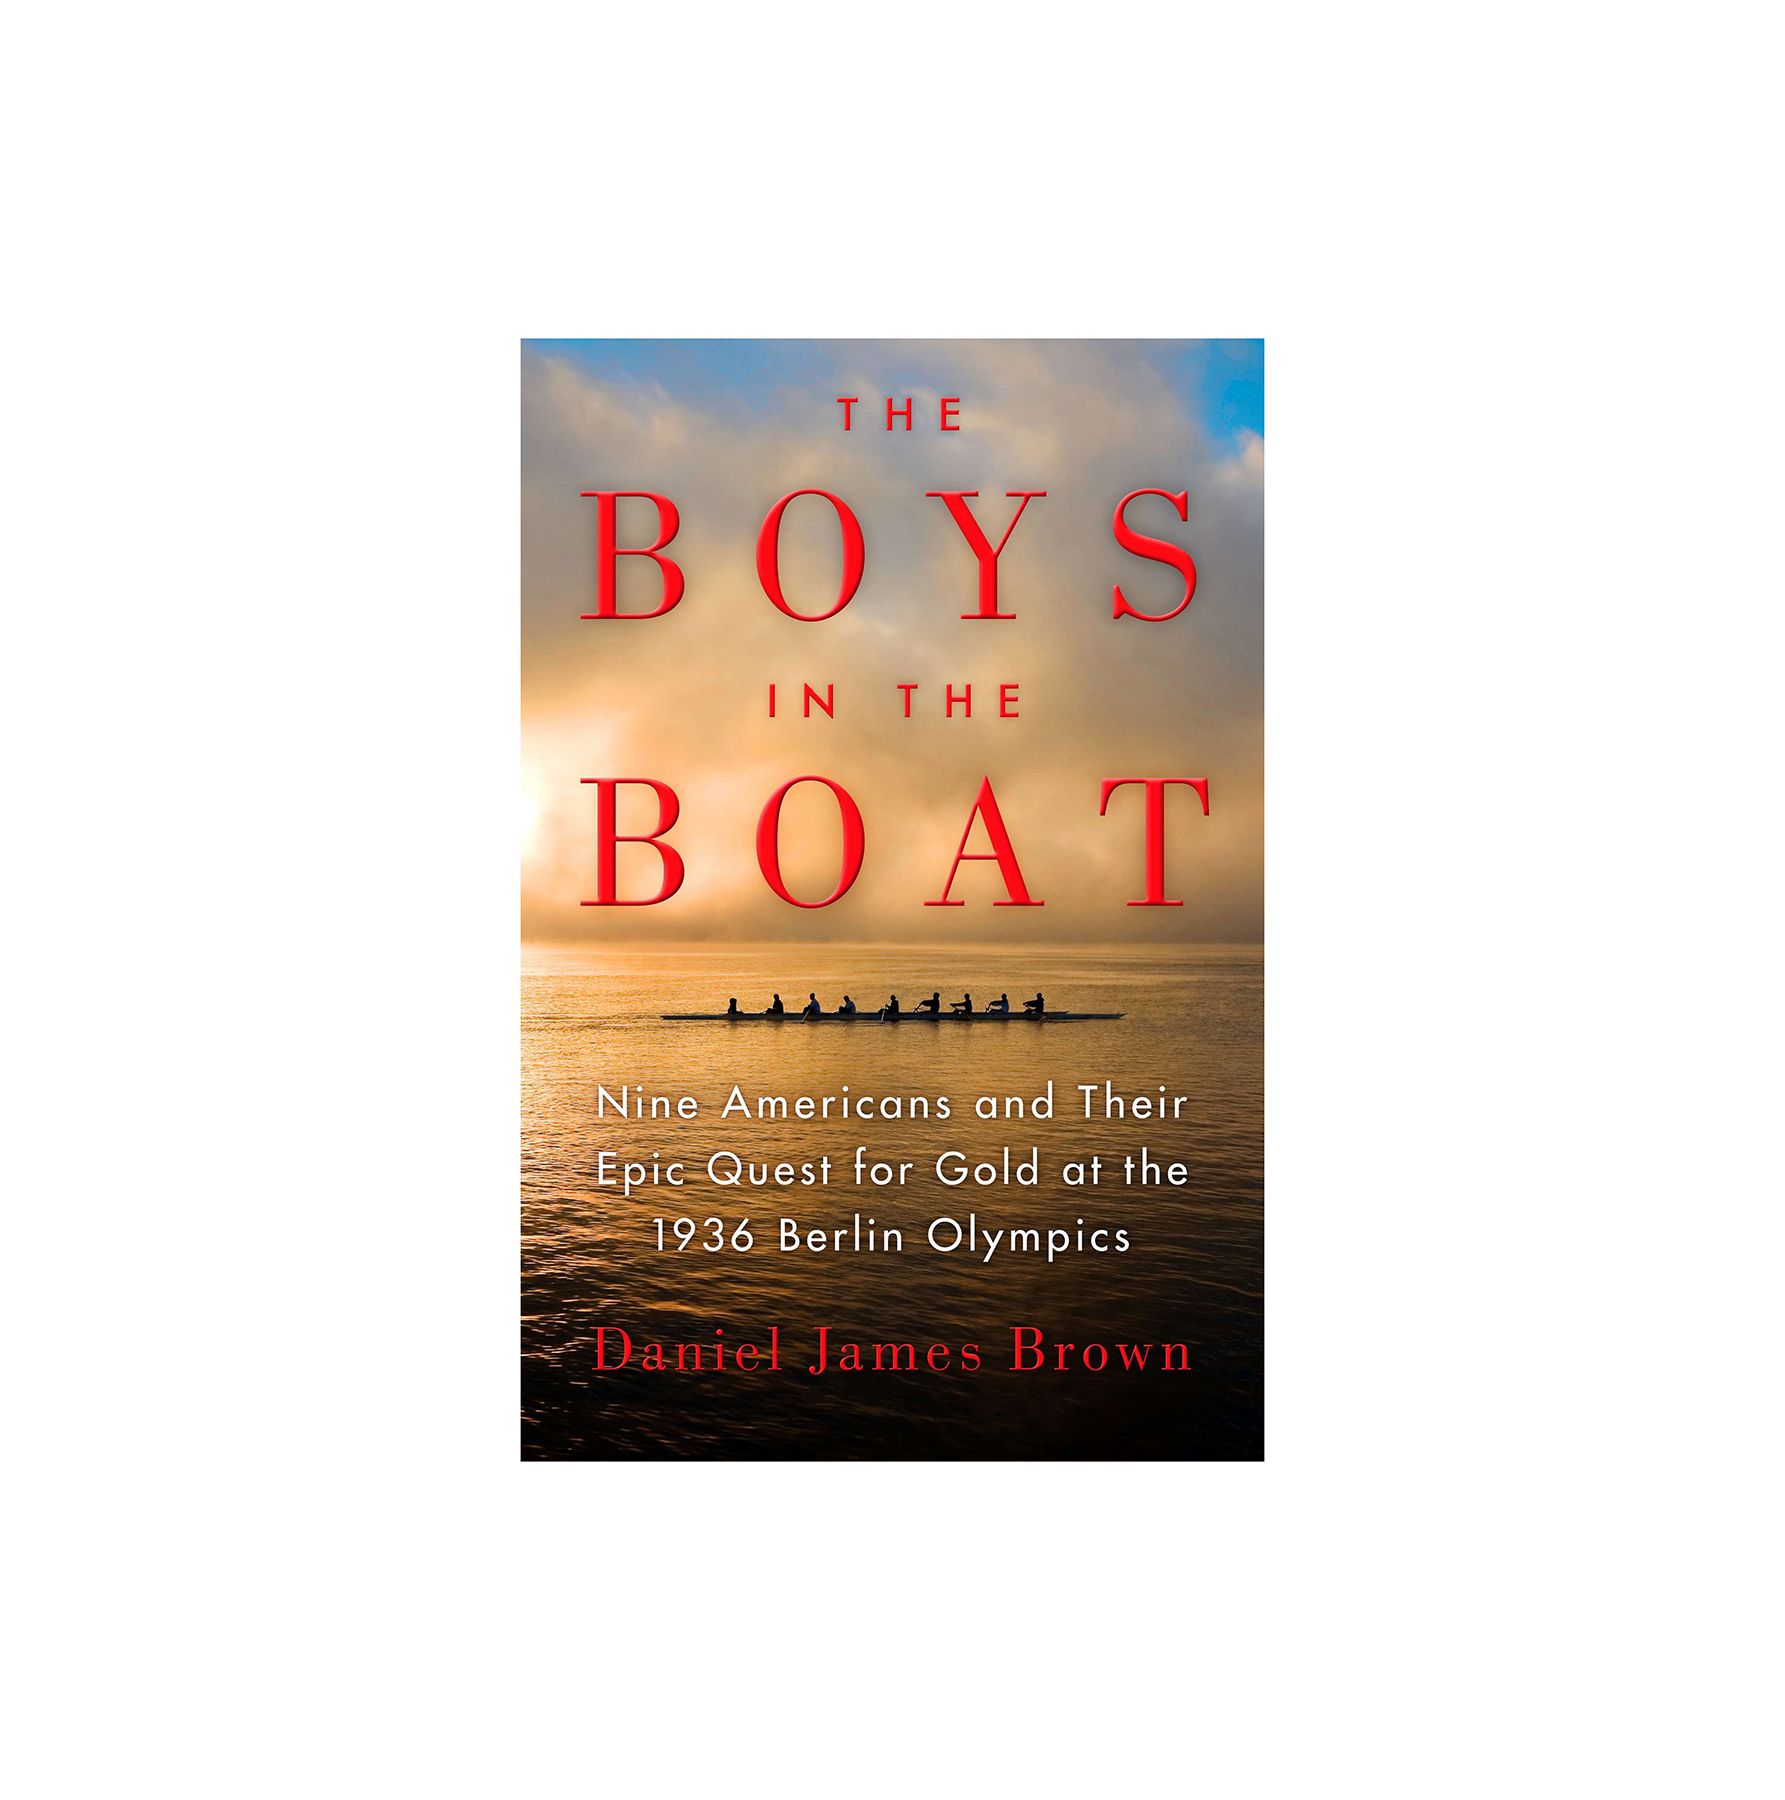 Berniukai valtyje, autorius Danielis Jamesas Brownas